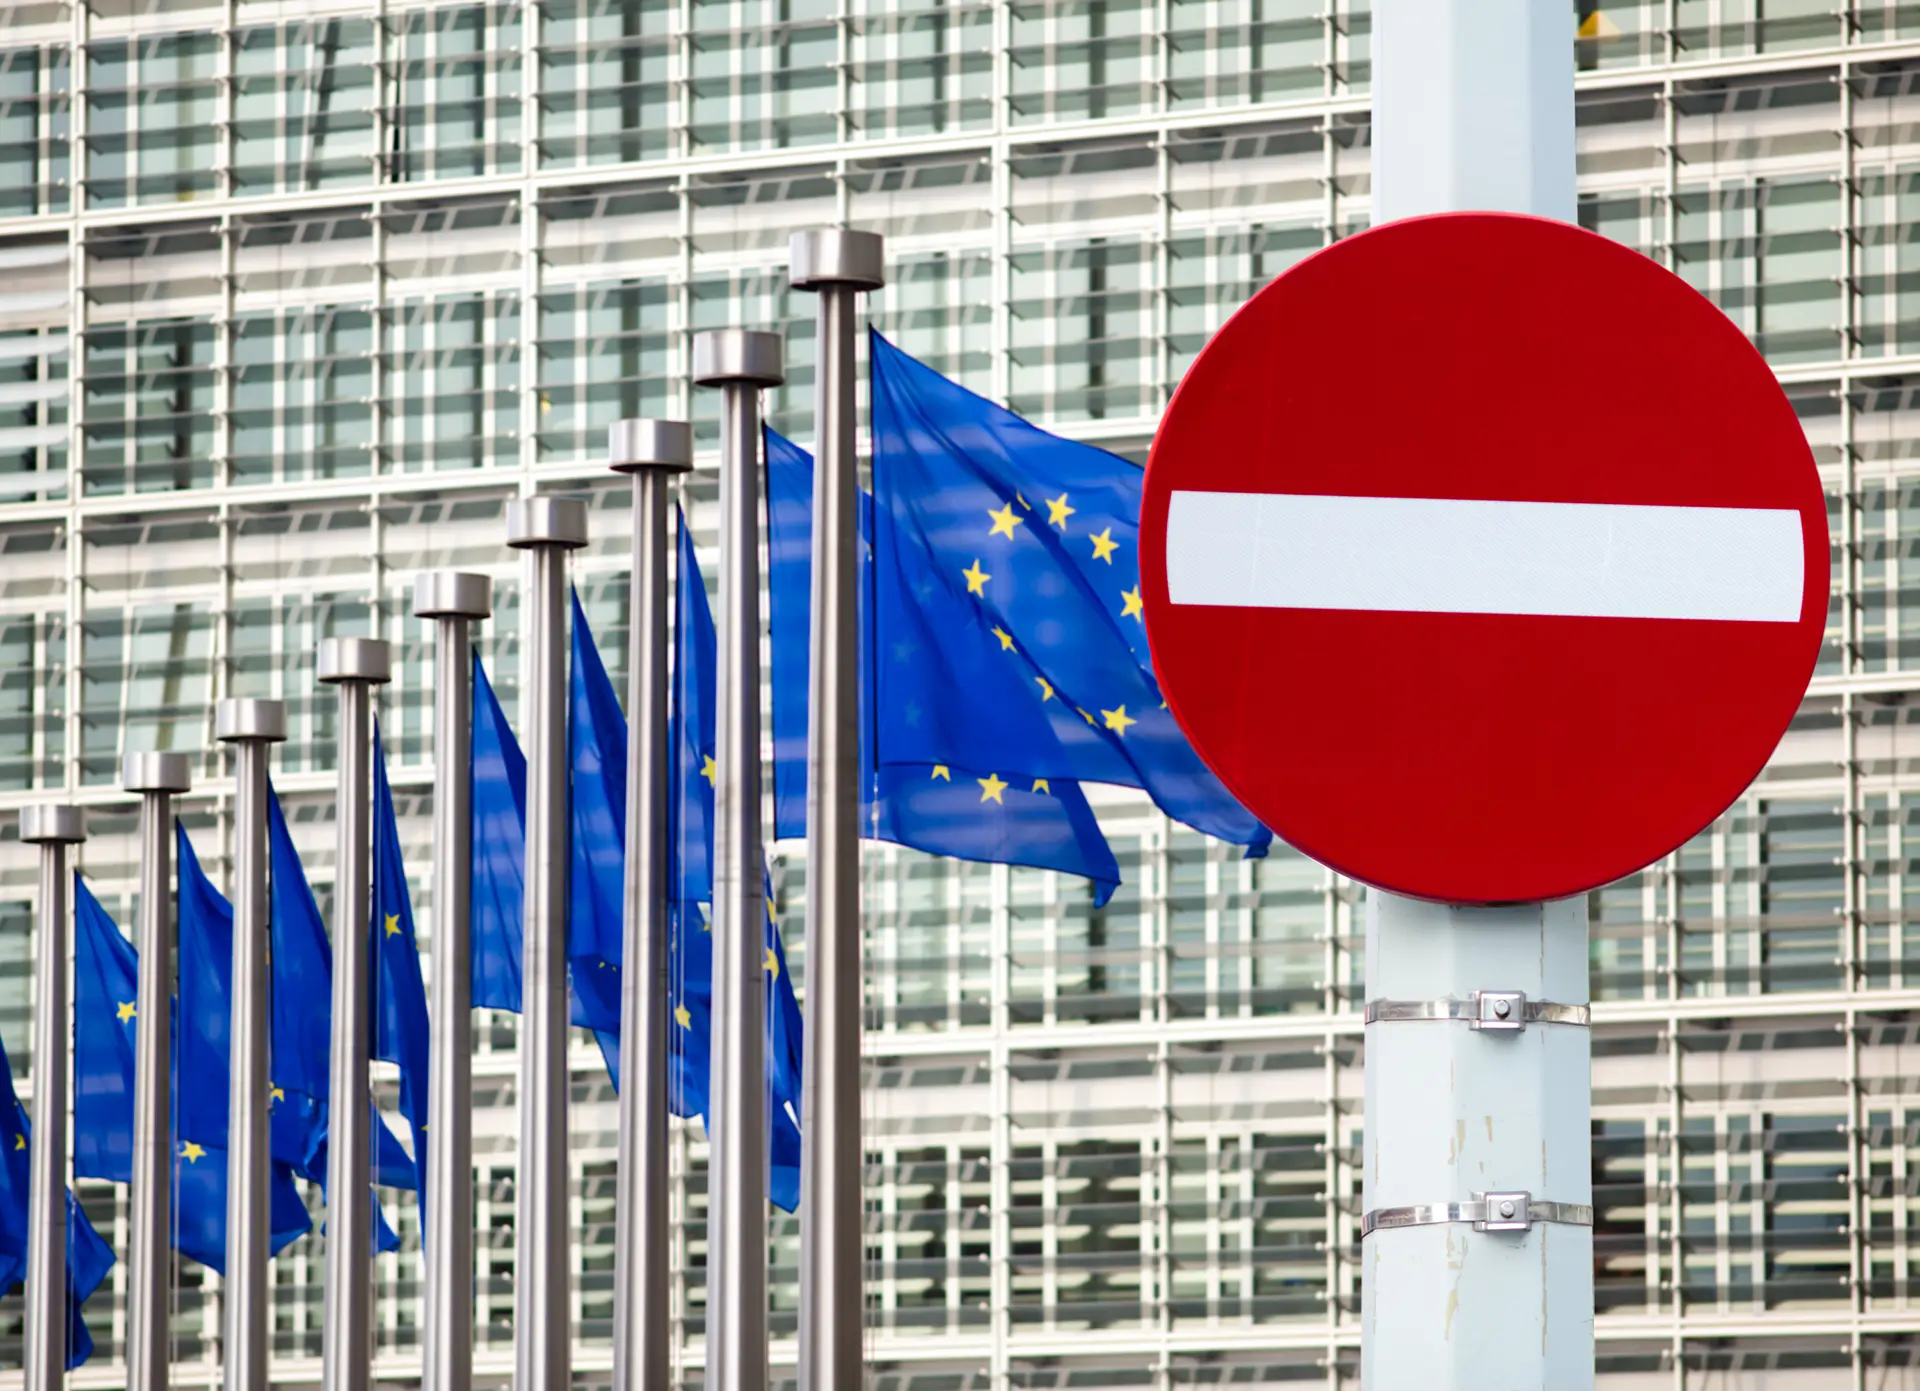 Stopschild vor EU Gebäude